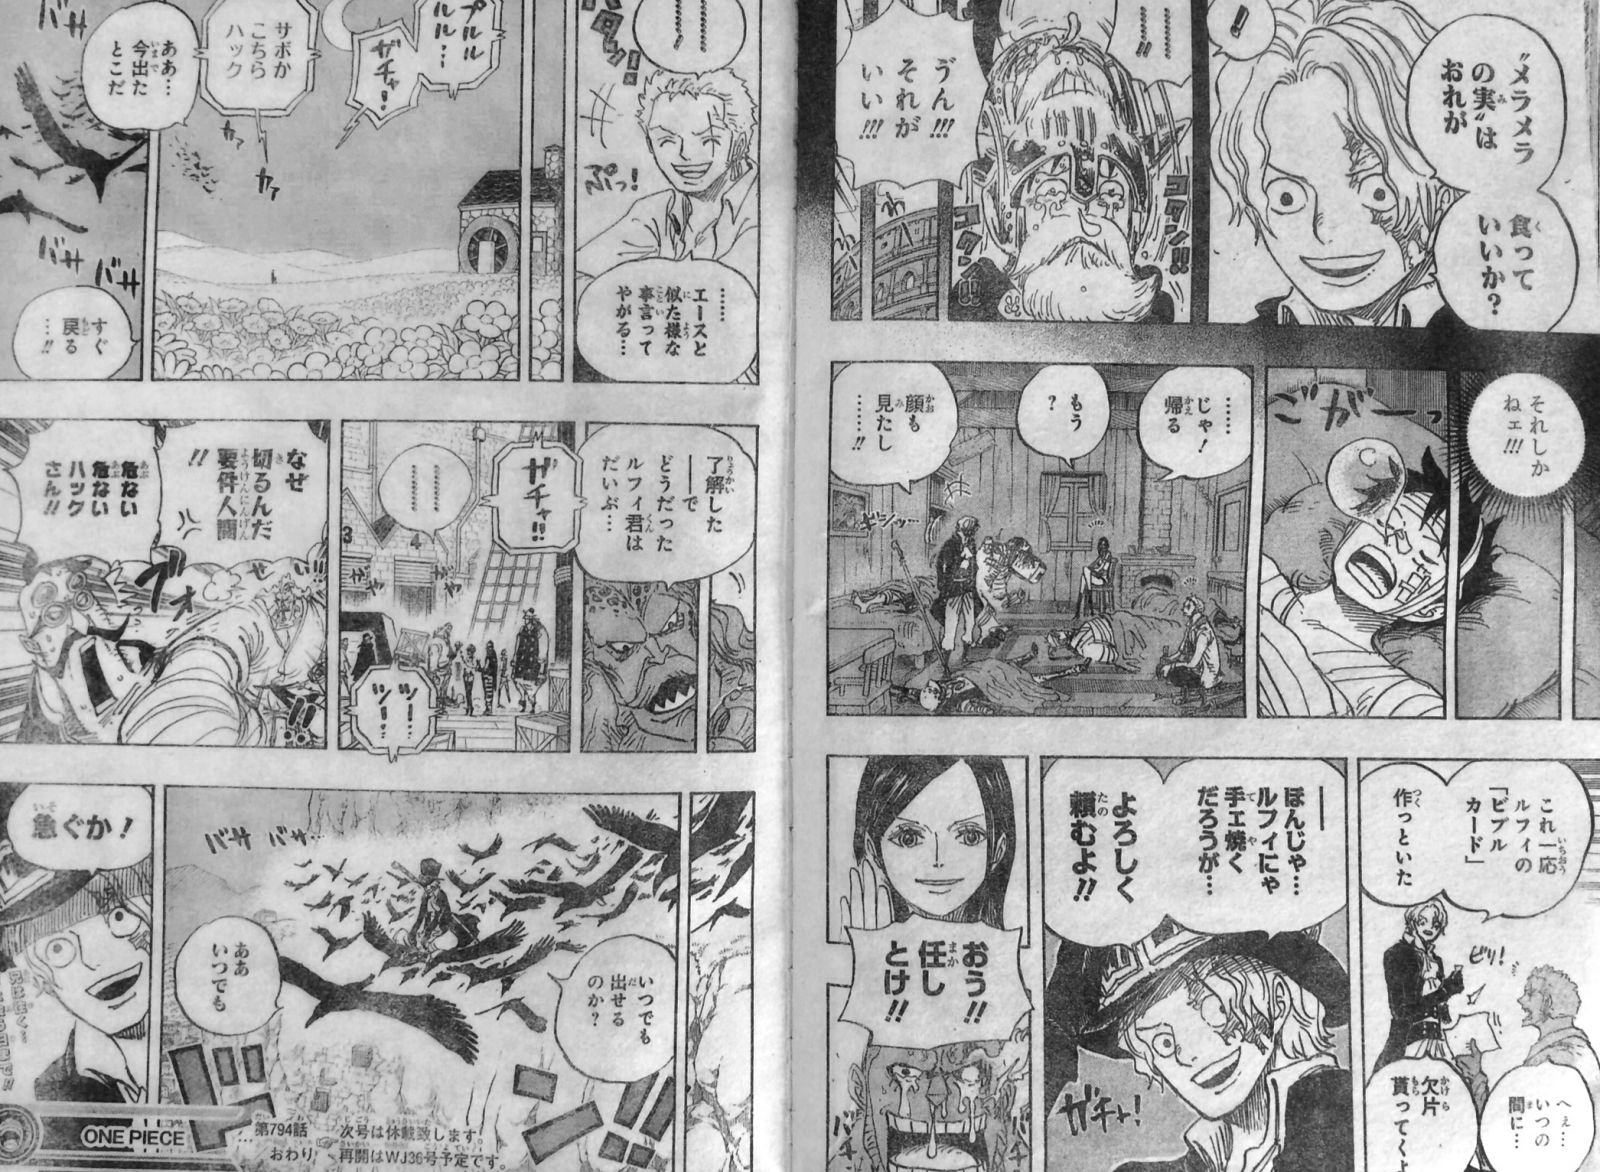 第794話 サボの冒険 記憶失っていたサボ エースの死で記憶蘇る メラメラの実経緯 トリトリの実 One Piece ワンピース 道場 アニメ 漫画 まにあ道 趣味と遊びを極めるサイト